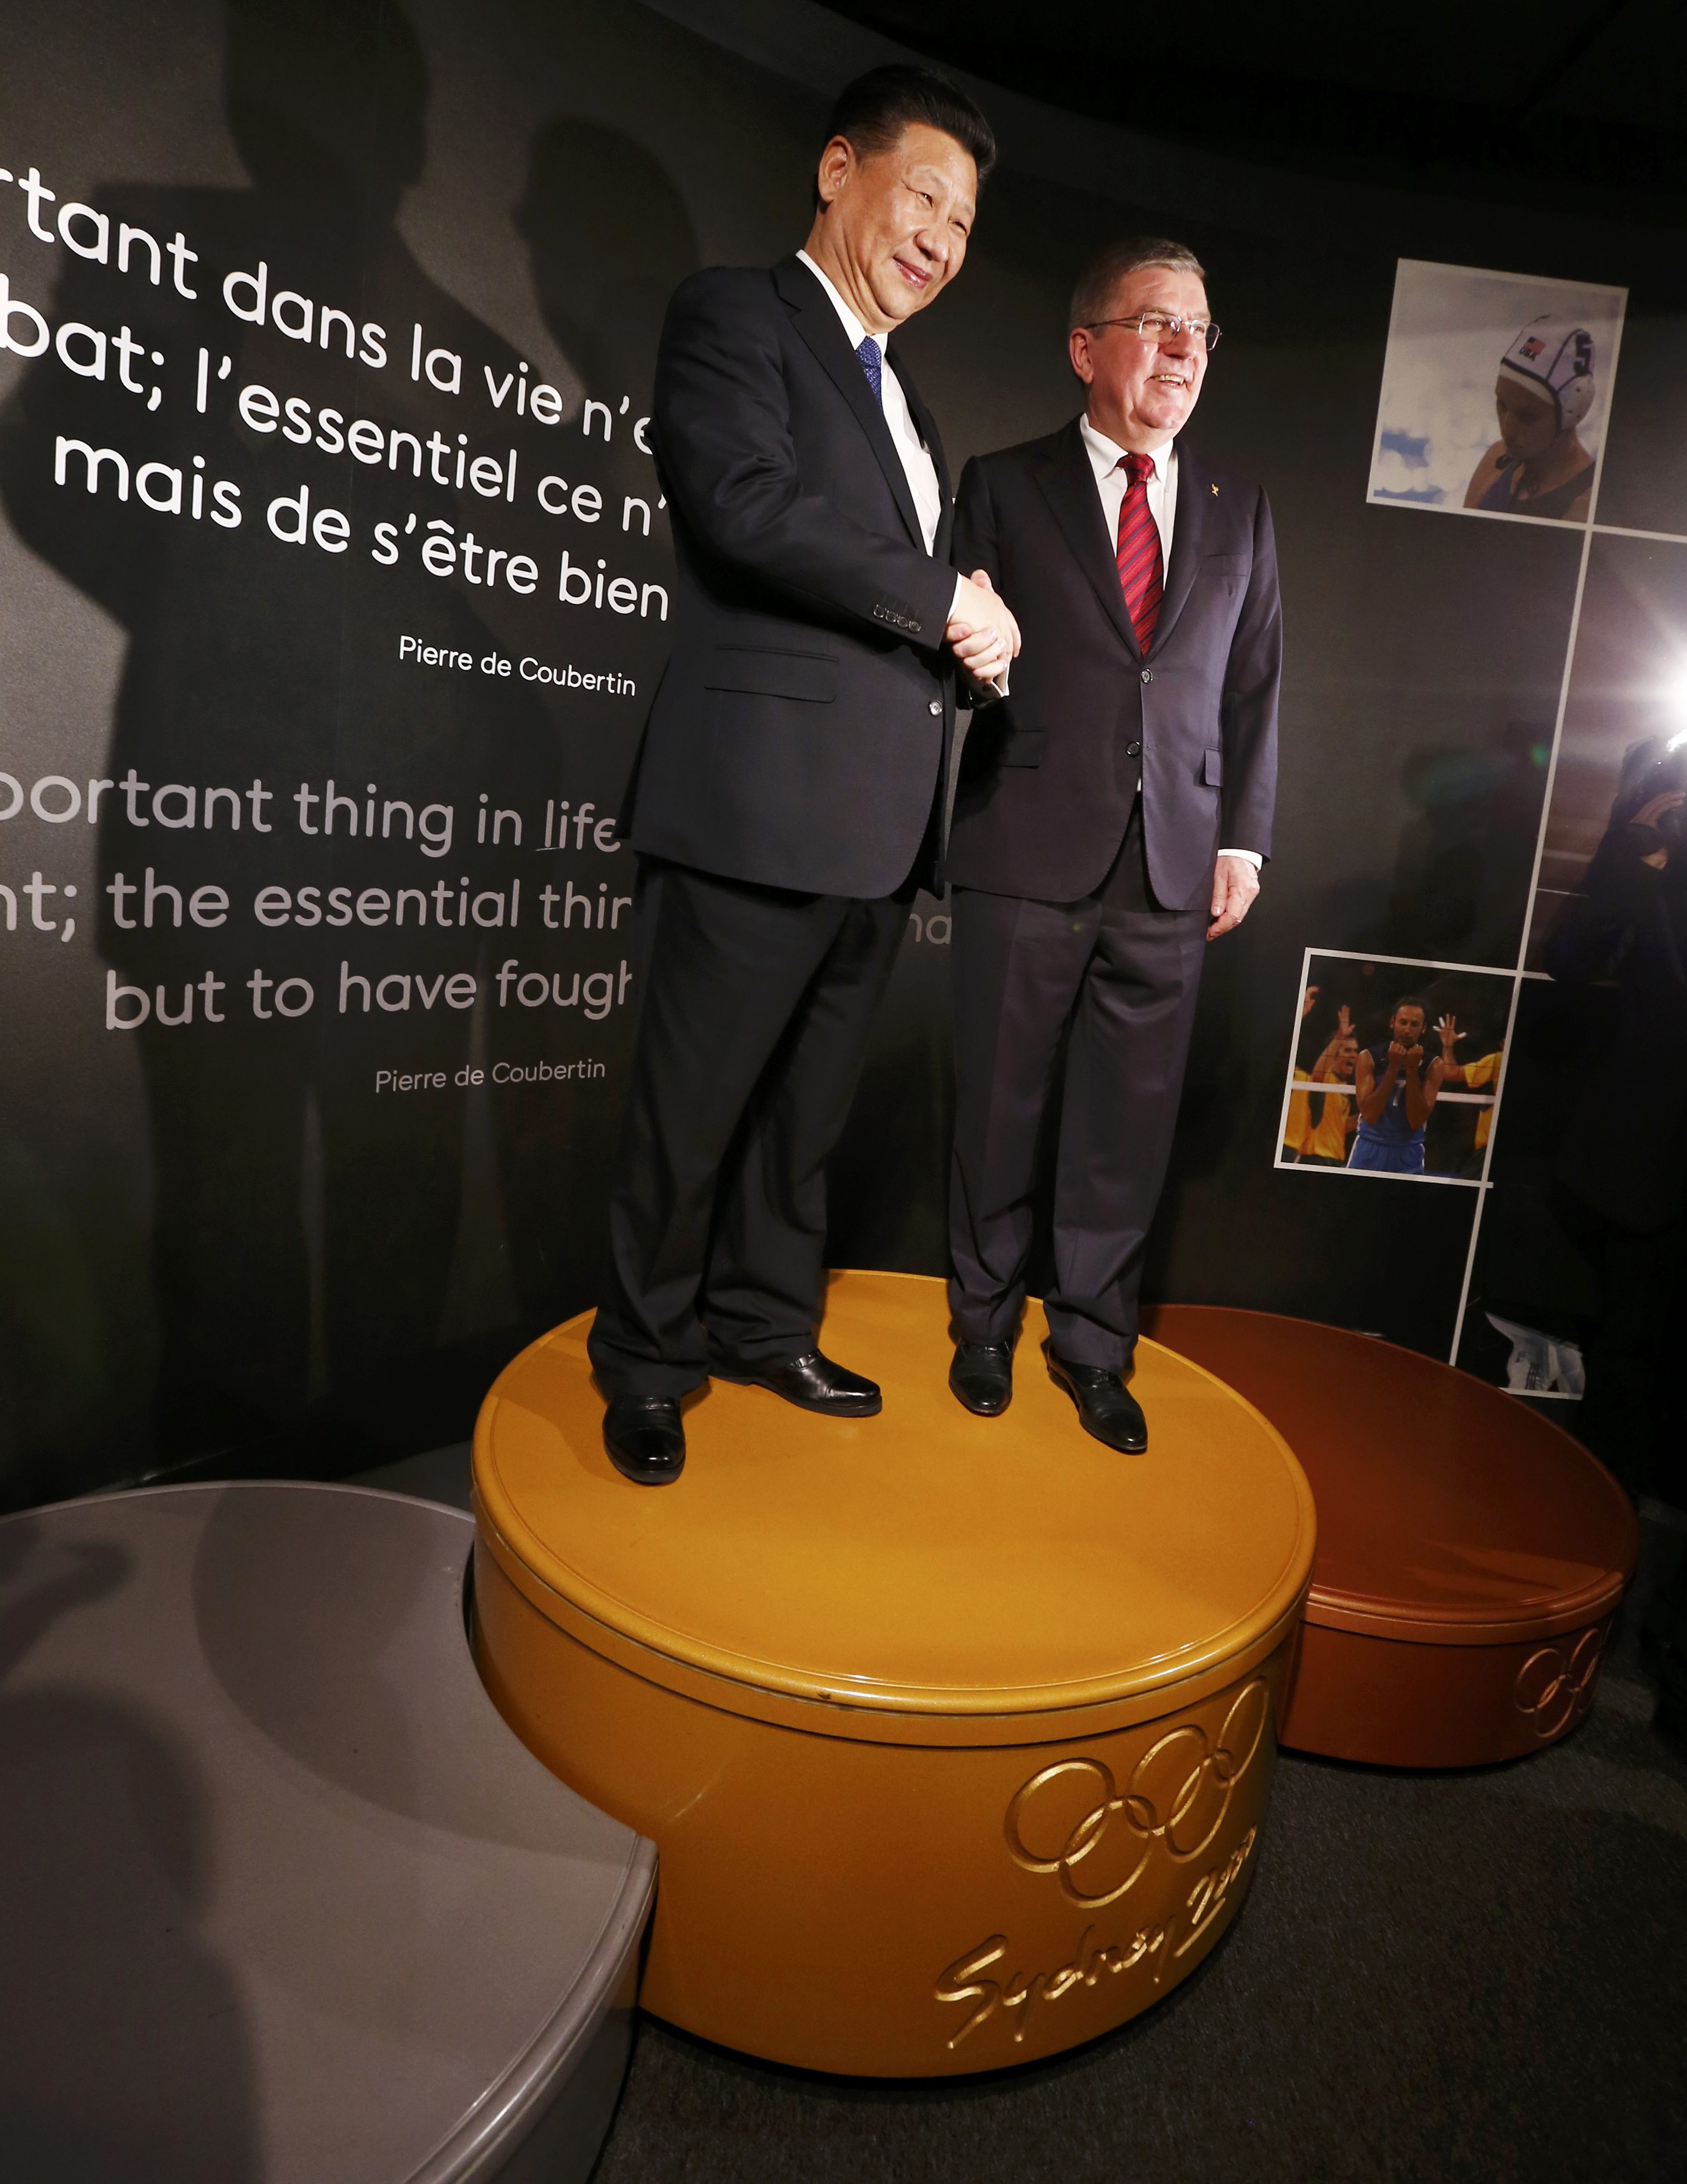 الرئيس الصينى يقف على منصة تتويج دورة الألعاب الأولمبية بسيدني 2000 خلال زيارته للمتحف الأوليمبى